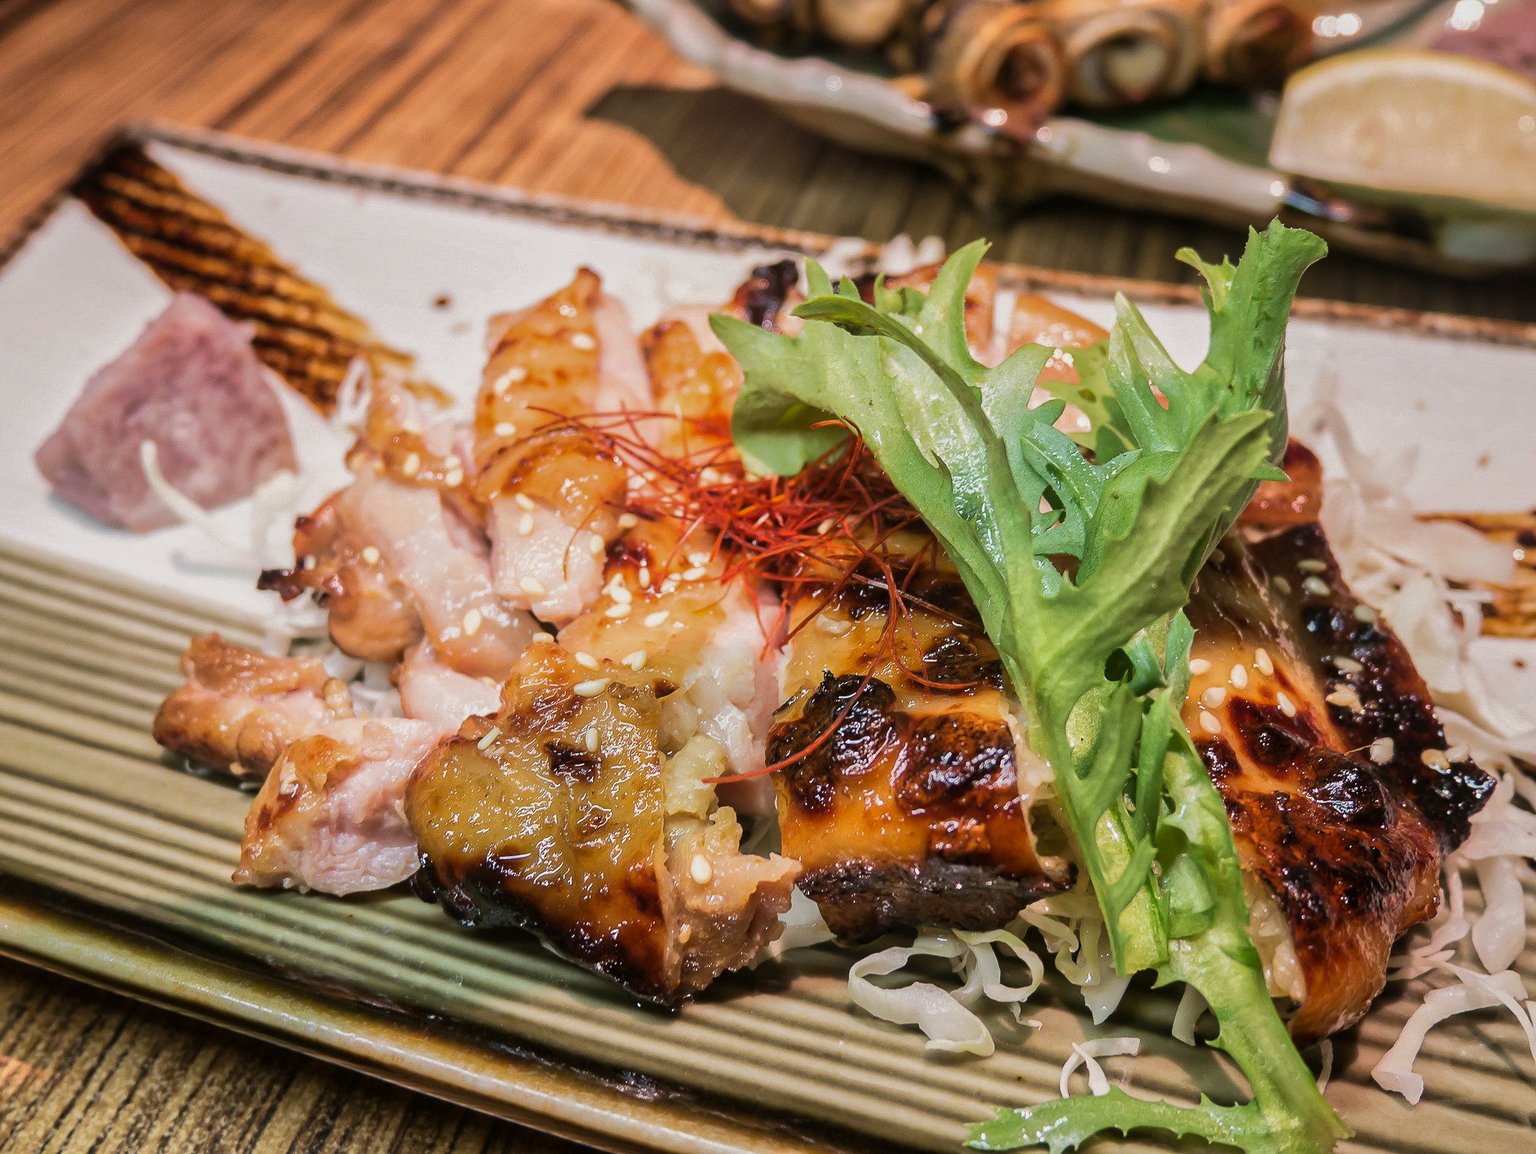 內湖美食推薦 幸和殿 台北日式料理鮮味再訪 美味生魚片、桔香雞腿排、創意鰻魚壽司卷